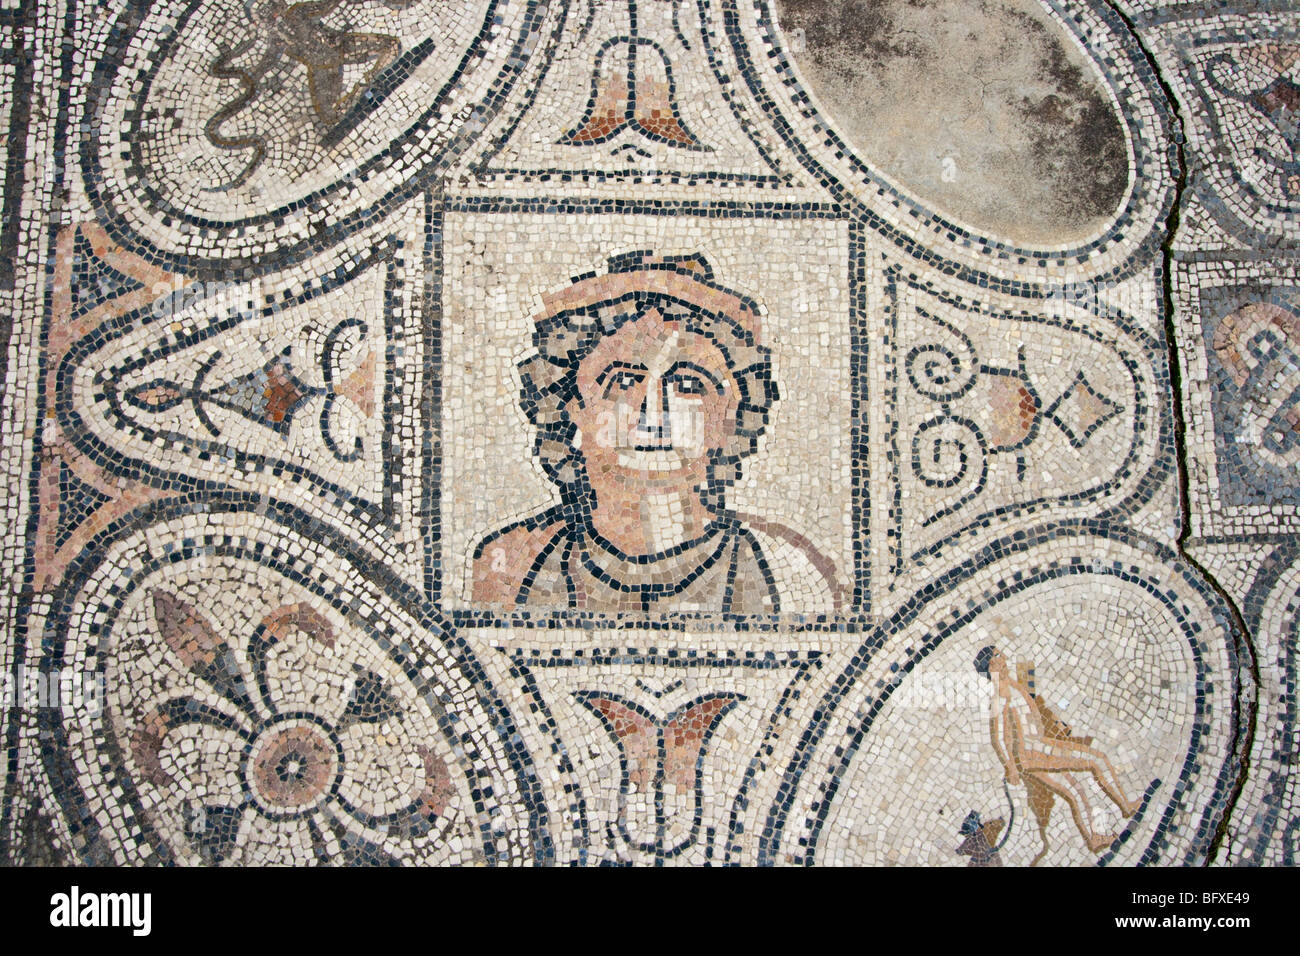 Douze Travaux d'Hercule mosaïque dans les ruines romaines de Volubilis Maroc Banque D'Images